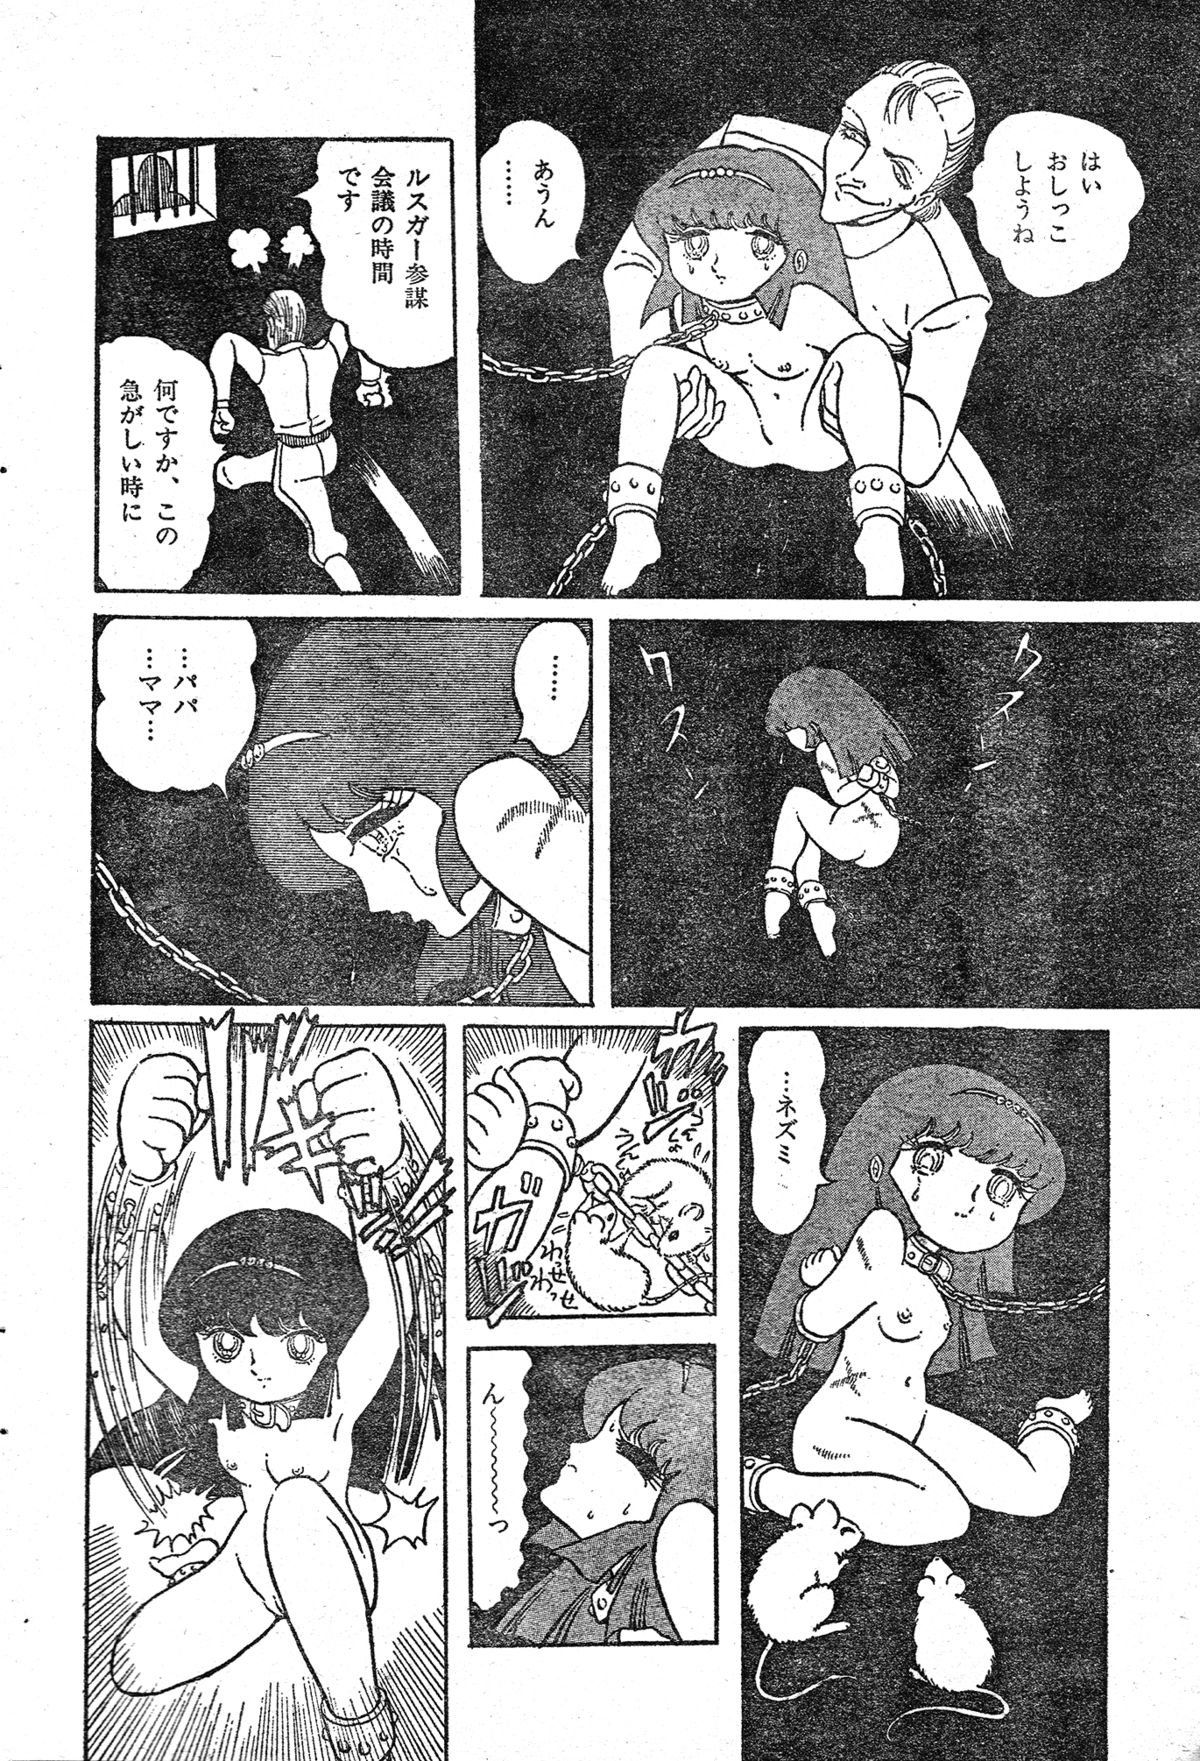 [破李拳竜] 撃殺!宇宙拳 第三章 (レモンピープル #4, 1982年4月)